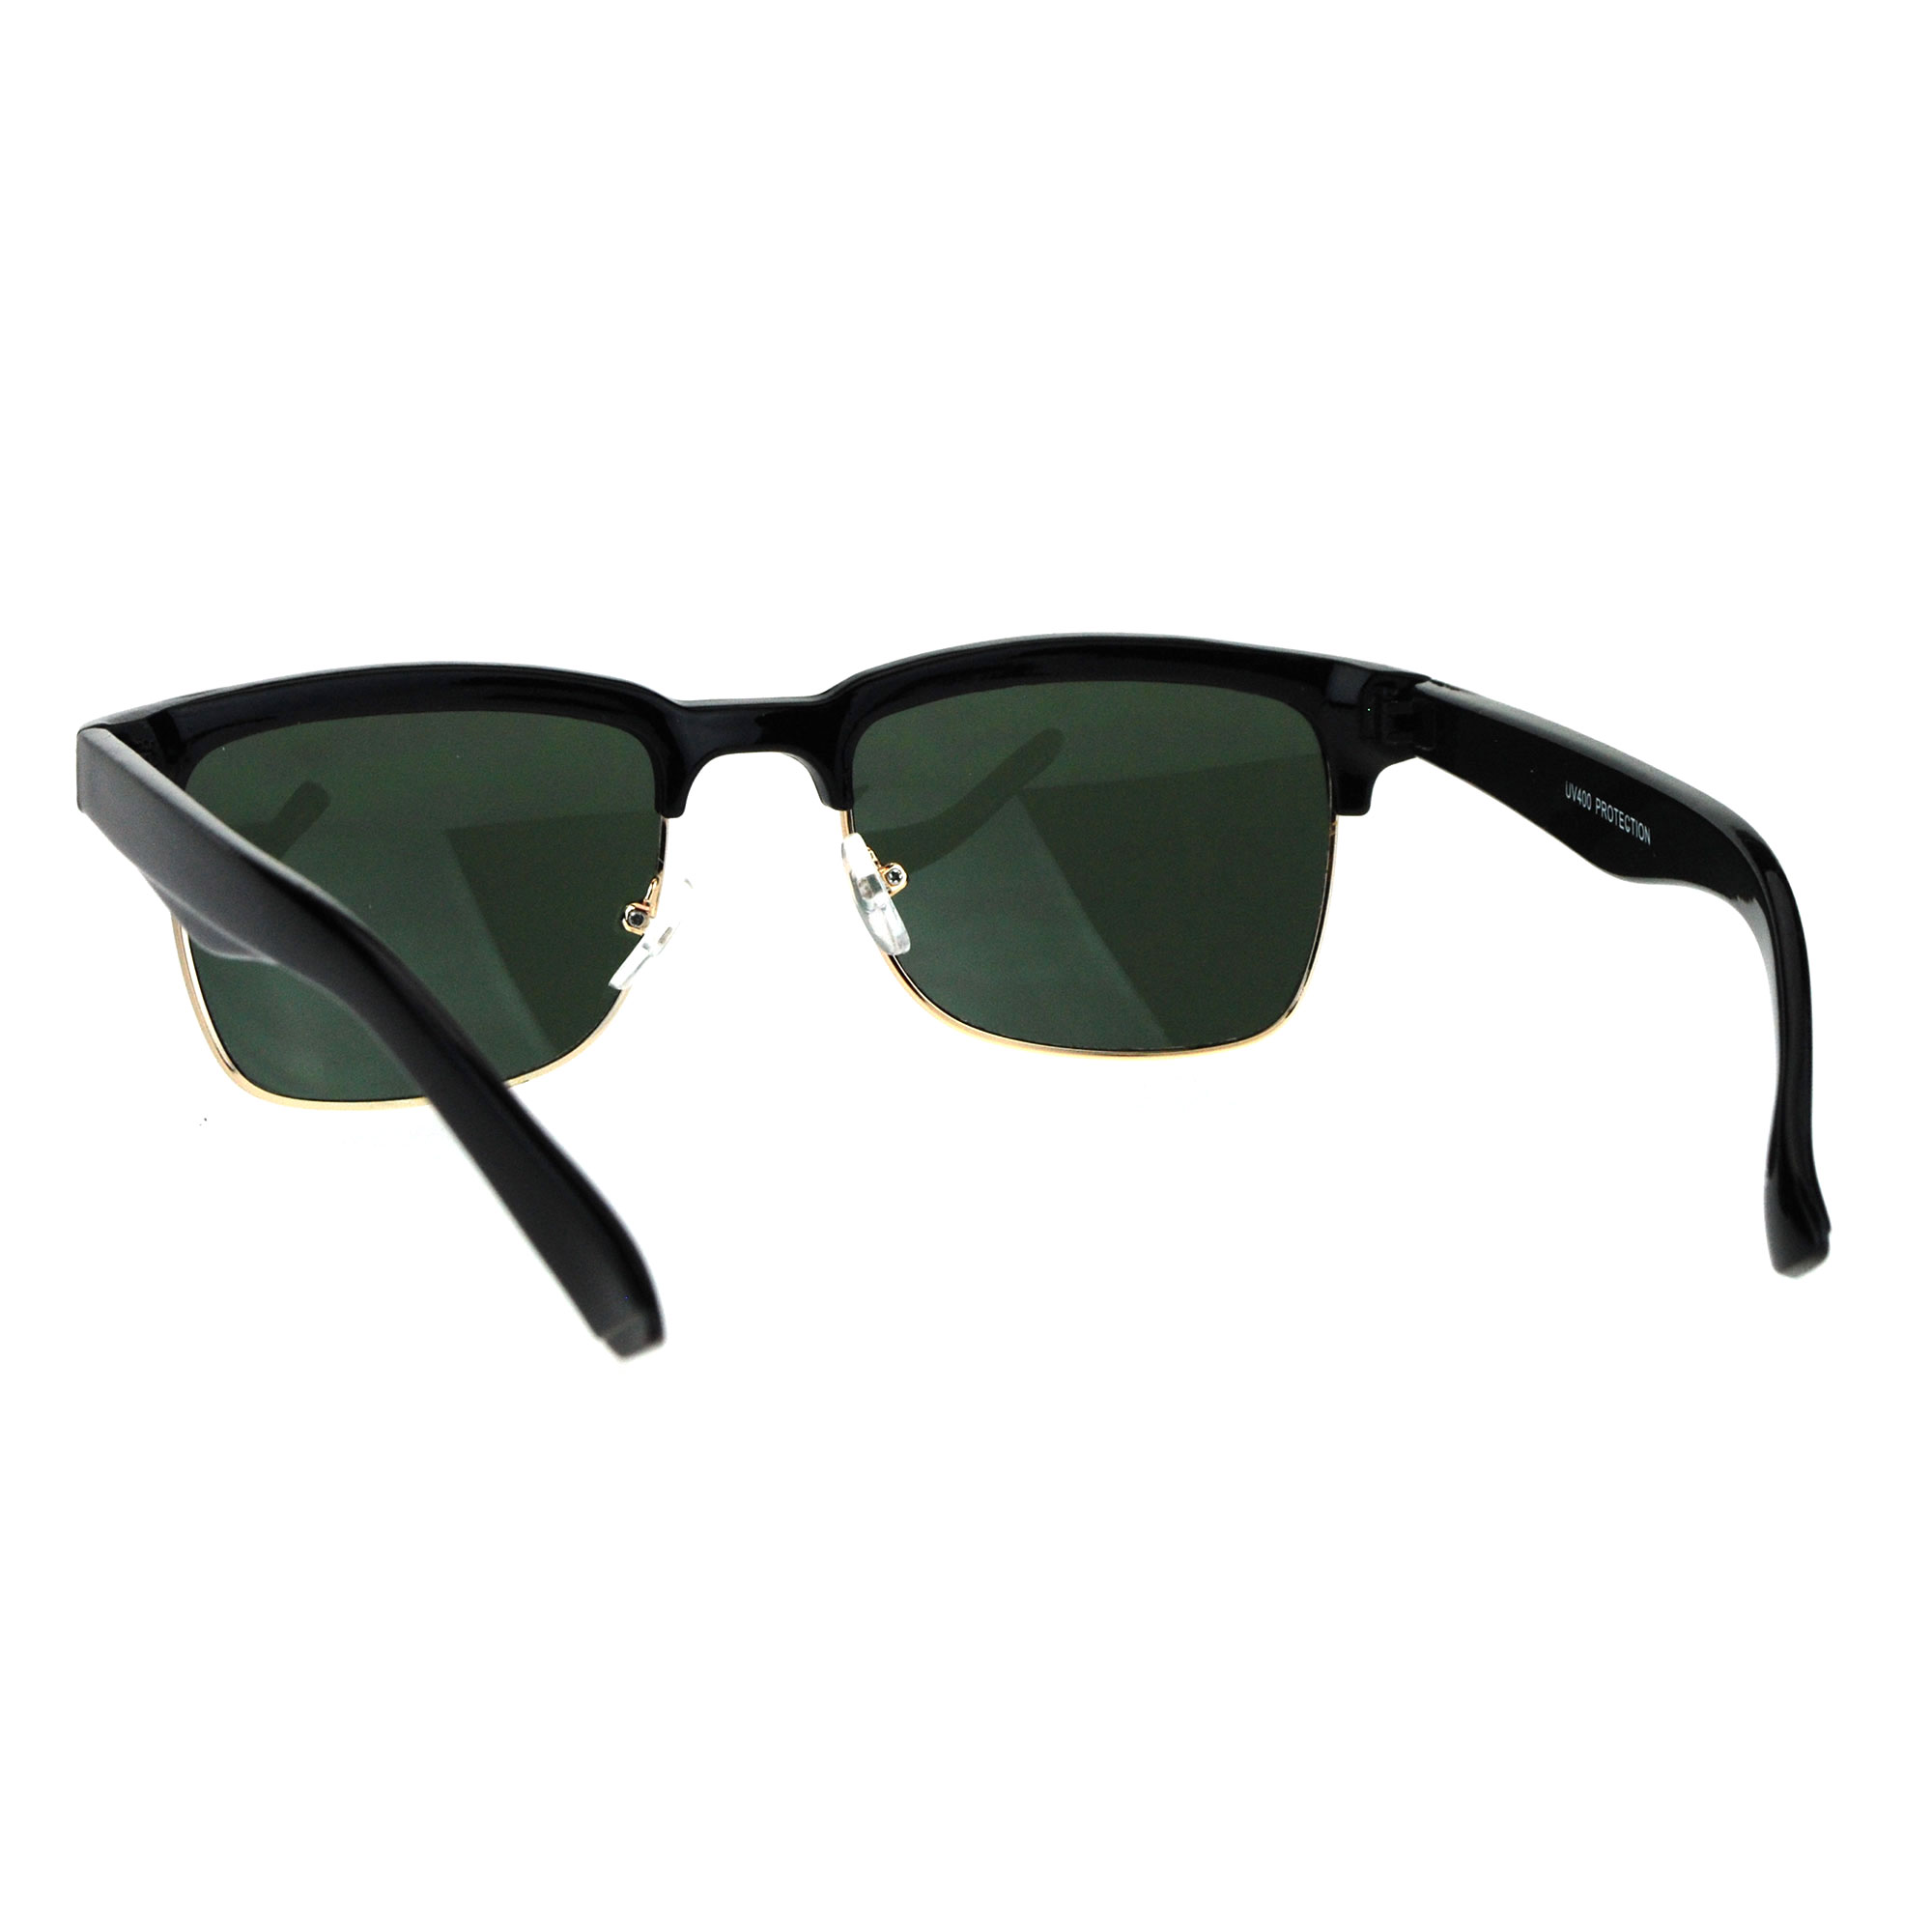 Mens Half Rim Rectangular Luxury Hipster Shade Sunglasses Ebay